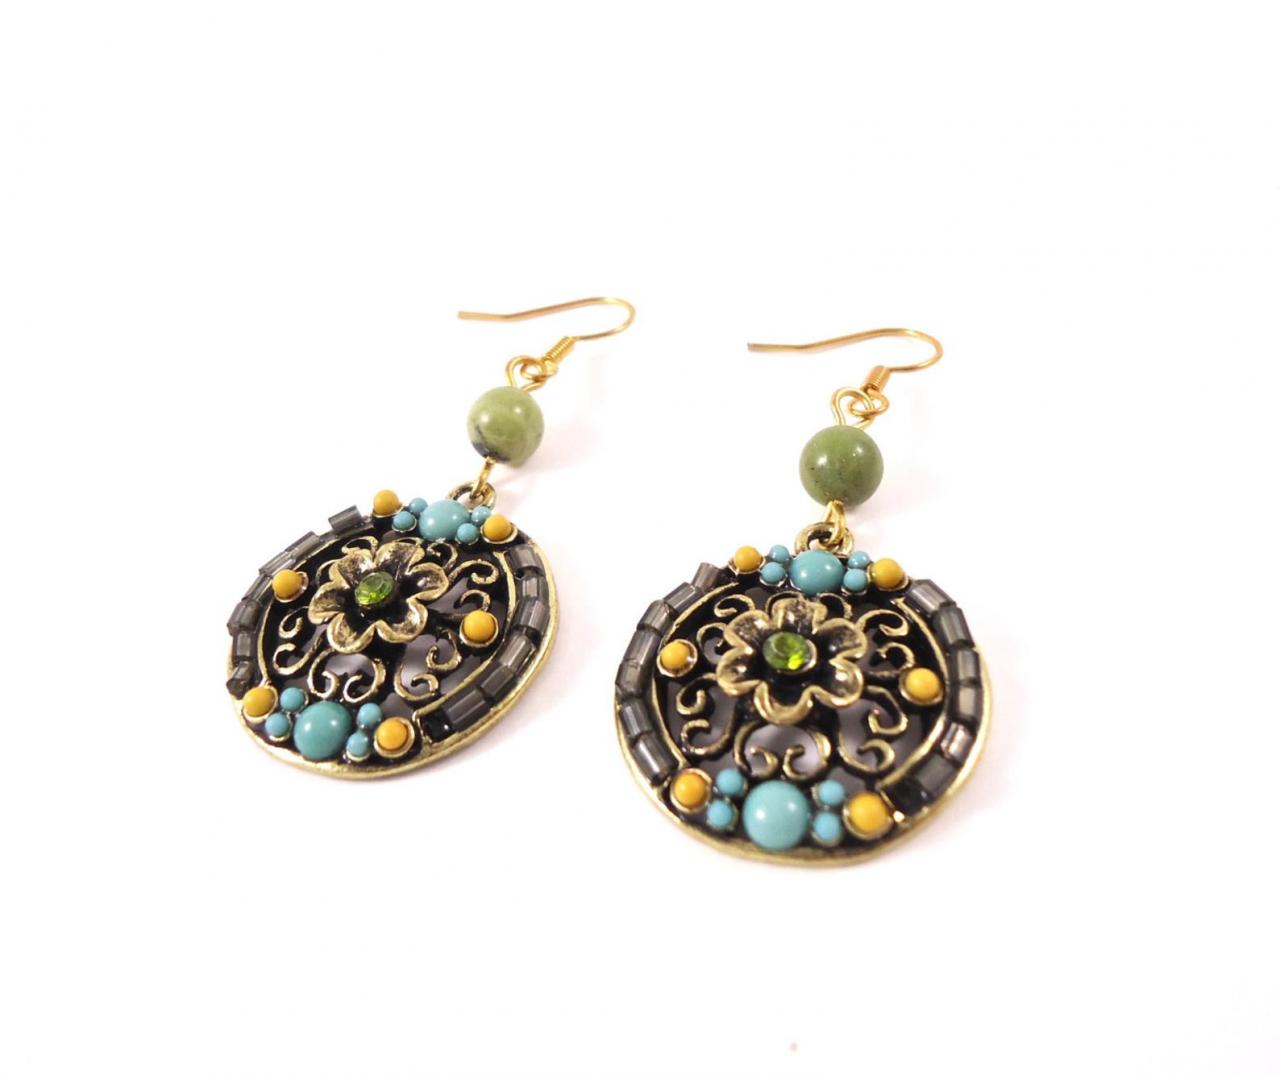 Flower Earrings - Flower Jewelry - Gold Flower - Filigree Earrings - Round Gold Earrings - Turquoise Earrings - Fall Earrings - Fall Jewelry